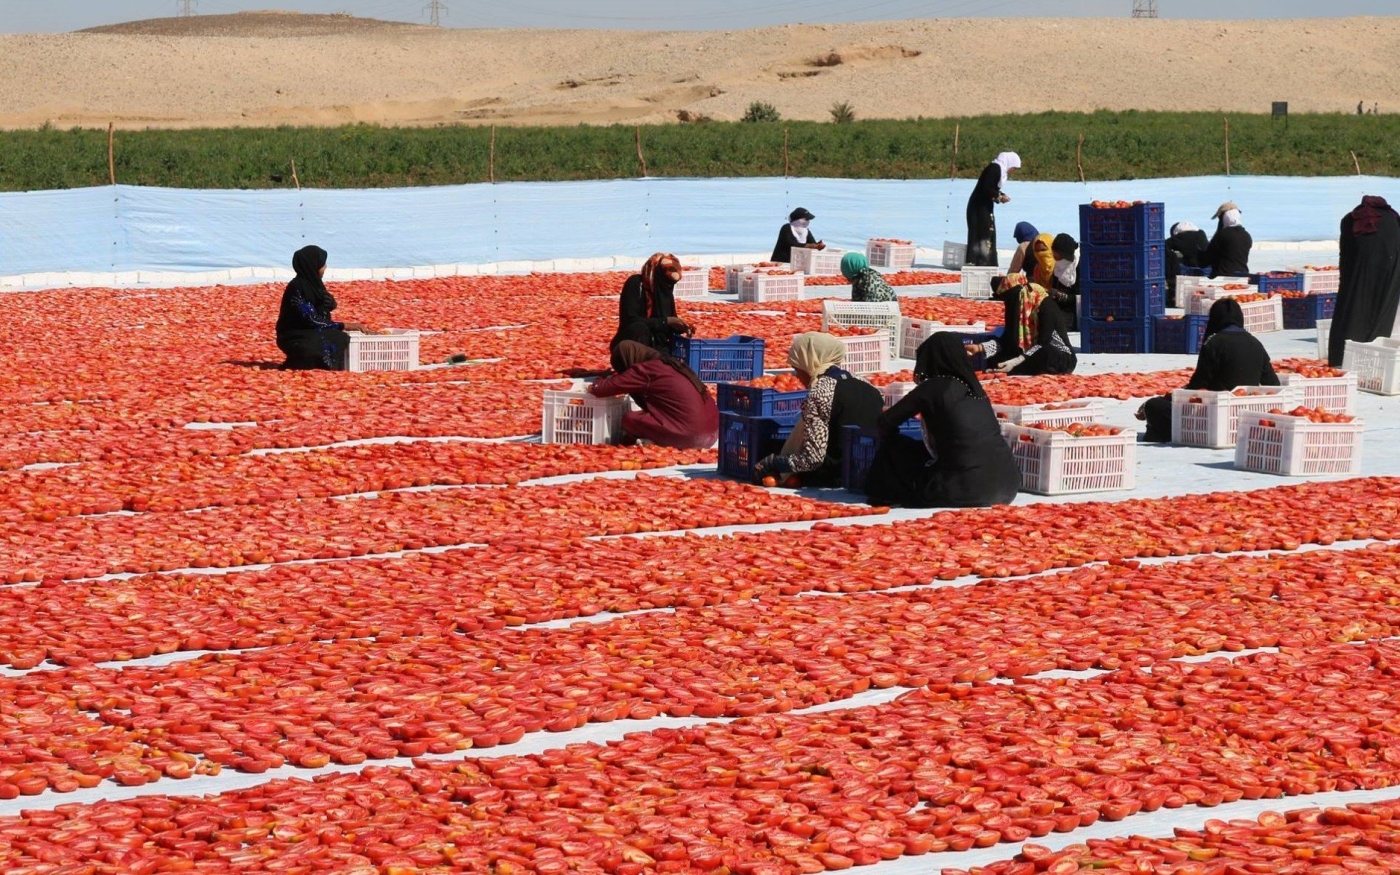 L’industrie des tomates séchées a créé des emplois pour les habitants de Louxor, en particulier pour les femmes (Amr Emam/MEE)